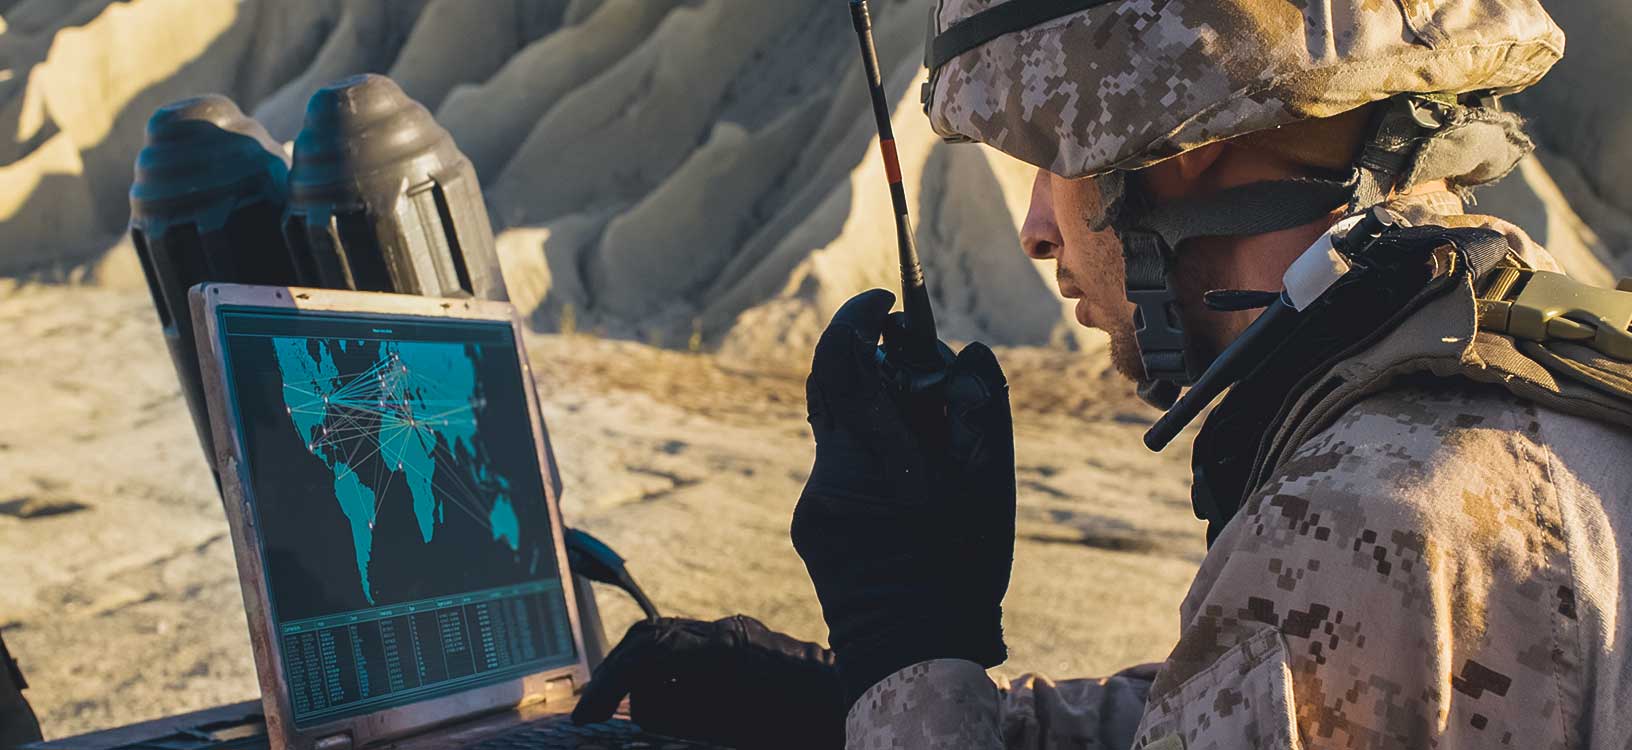 Un soldato usa un computer portatile e una radio per comunicare durante un'operazione militare nel deserto